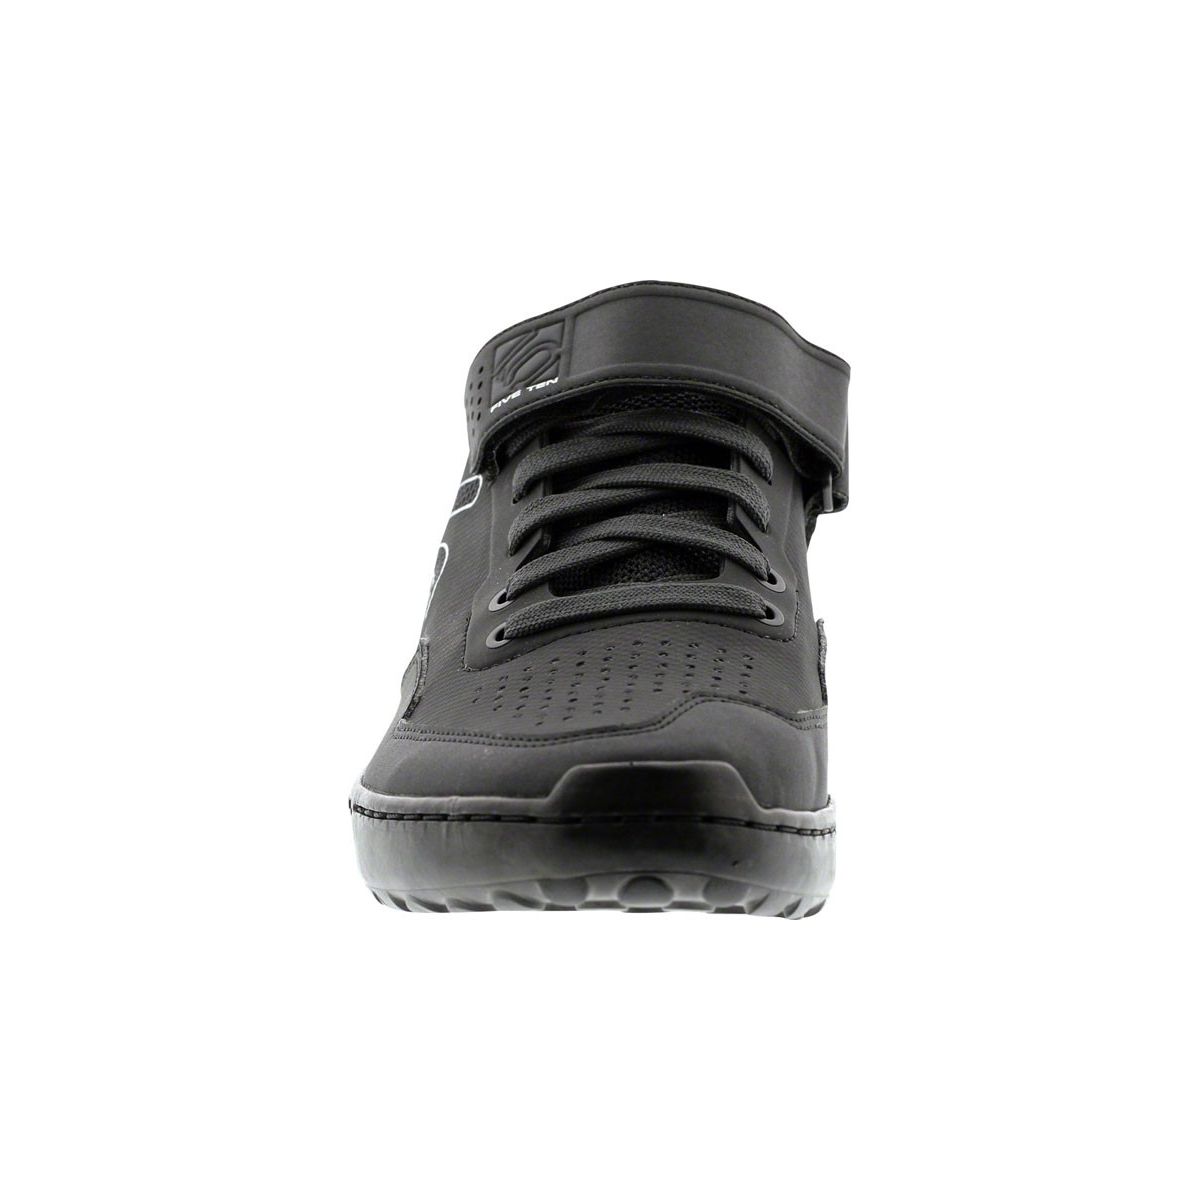 Precio Zapatillas Enduro Five Ten Kestrel Lace black carbon | comprar online